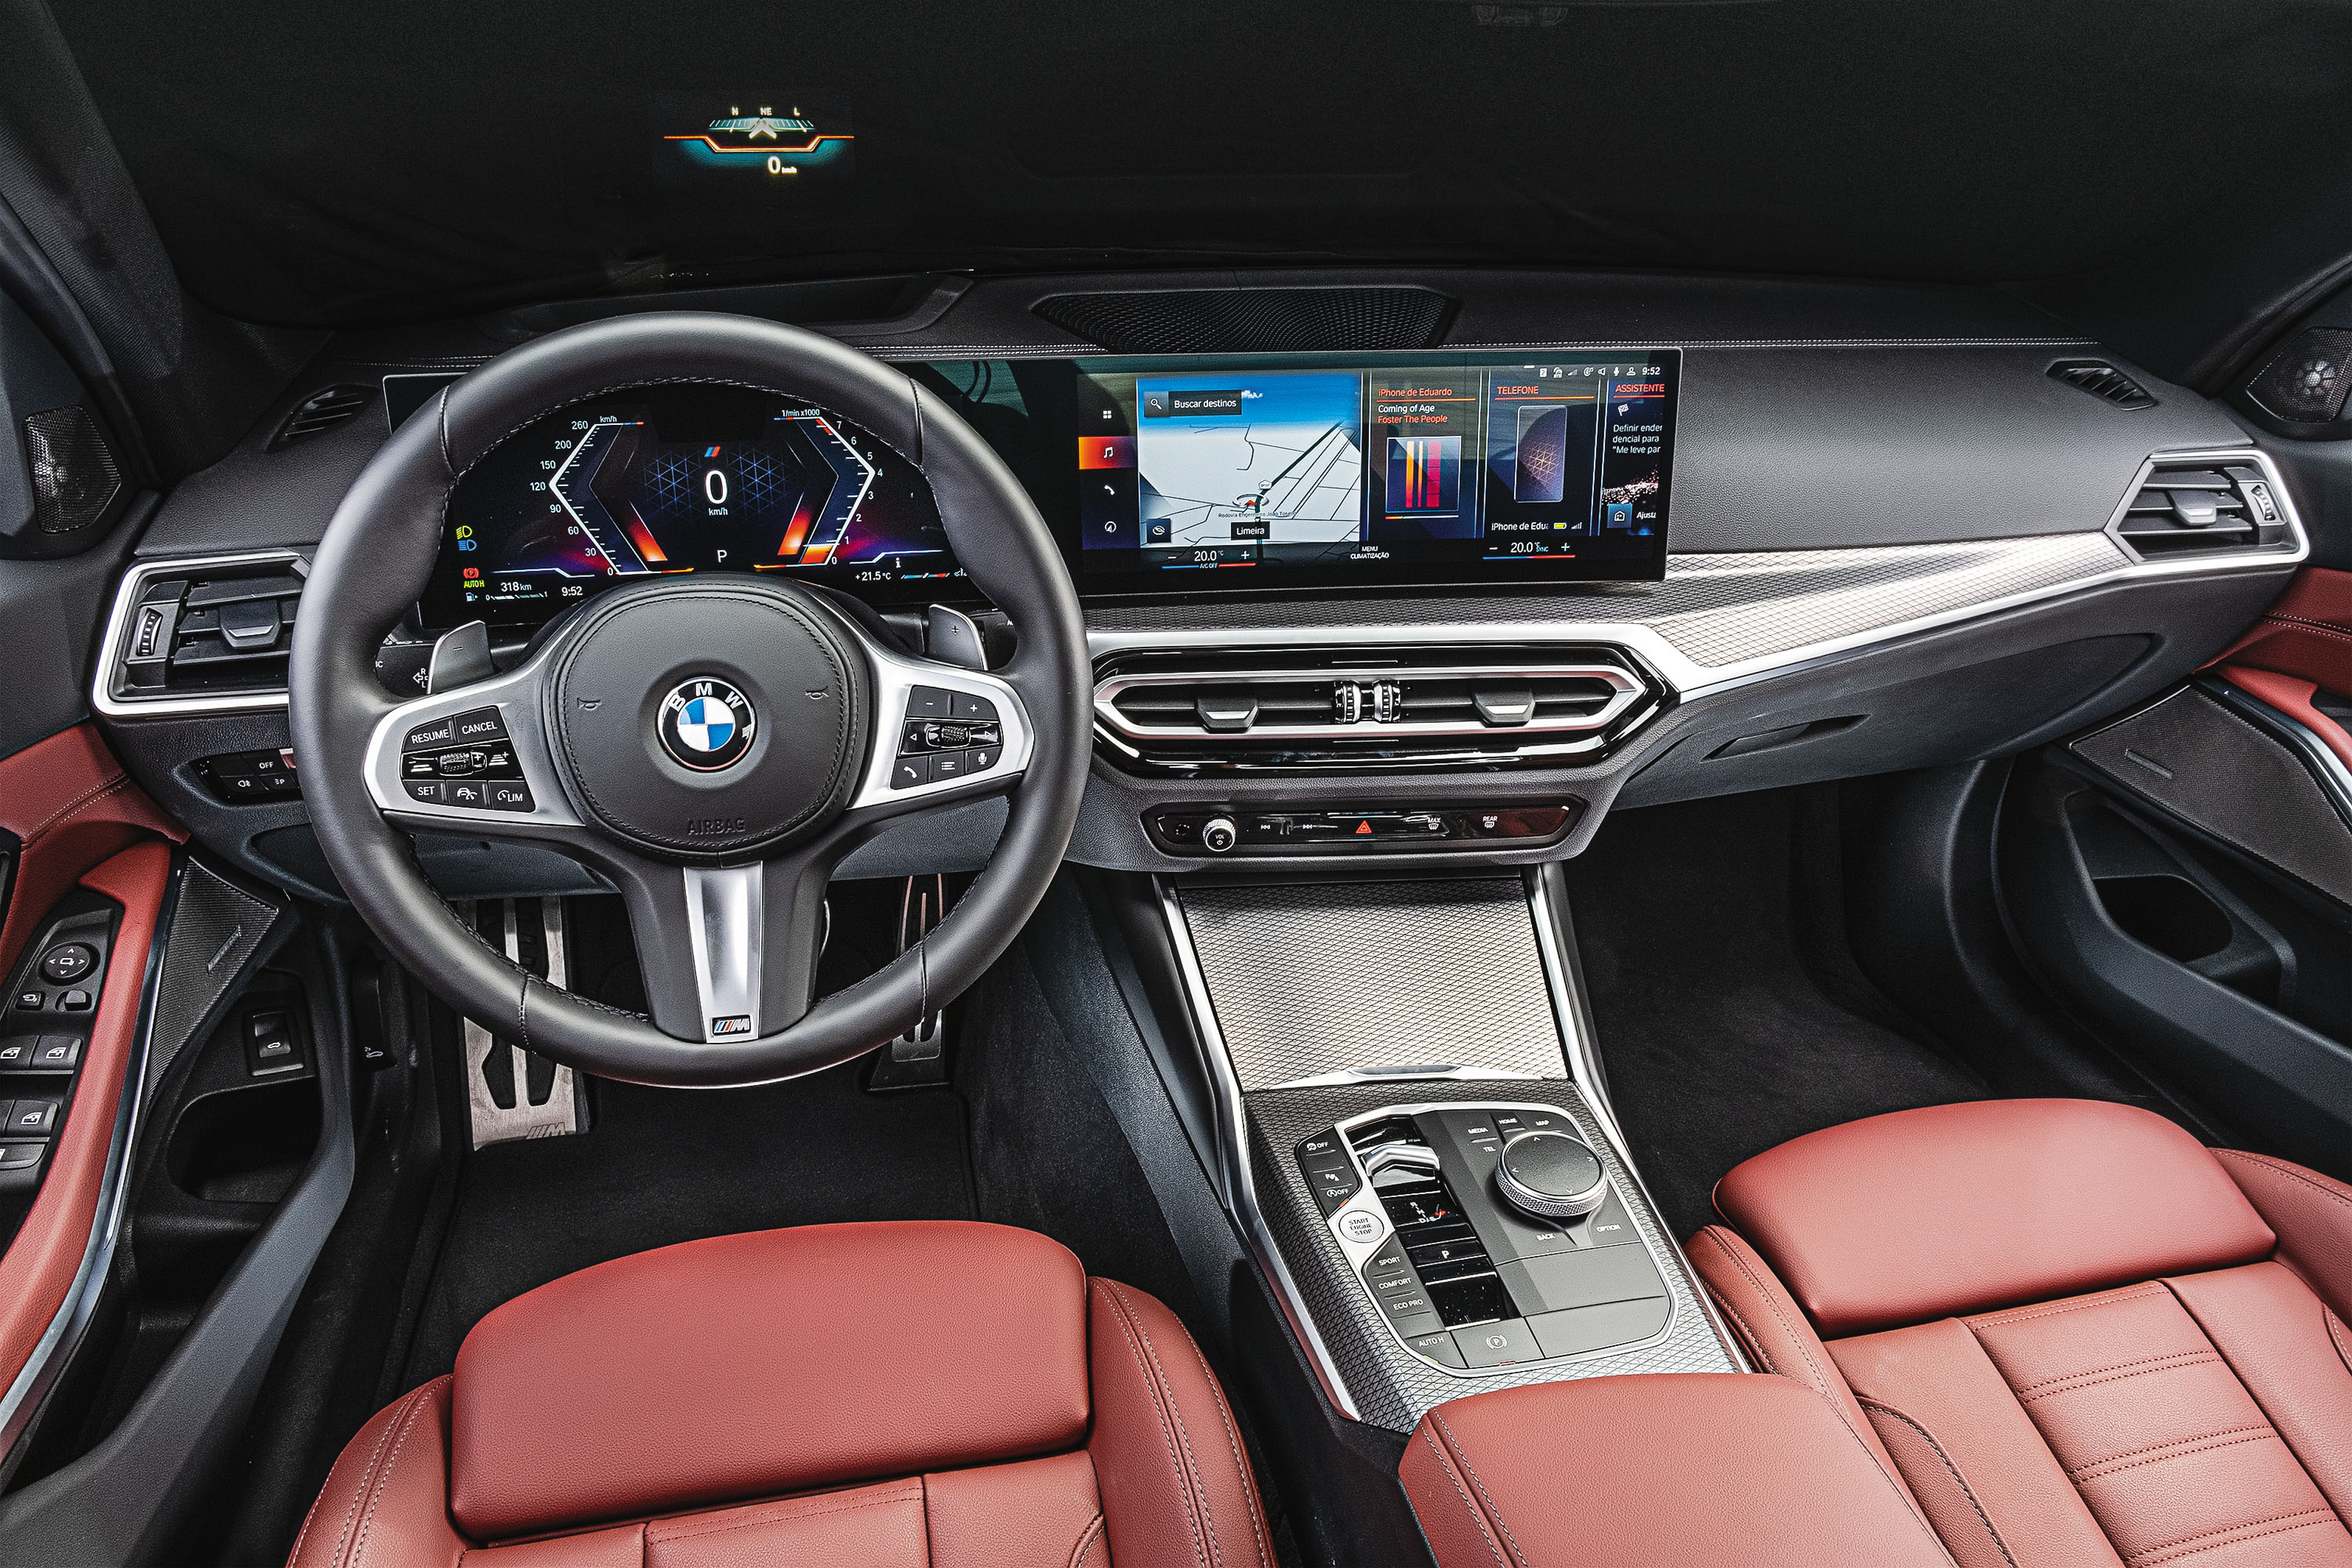 Teste novo BMW 320i ganha painel do iX e vende tanto quanto o Virtus